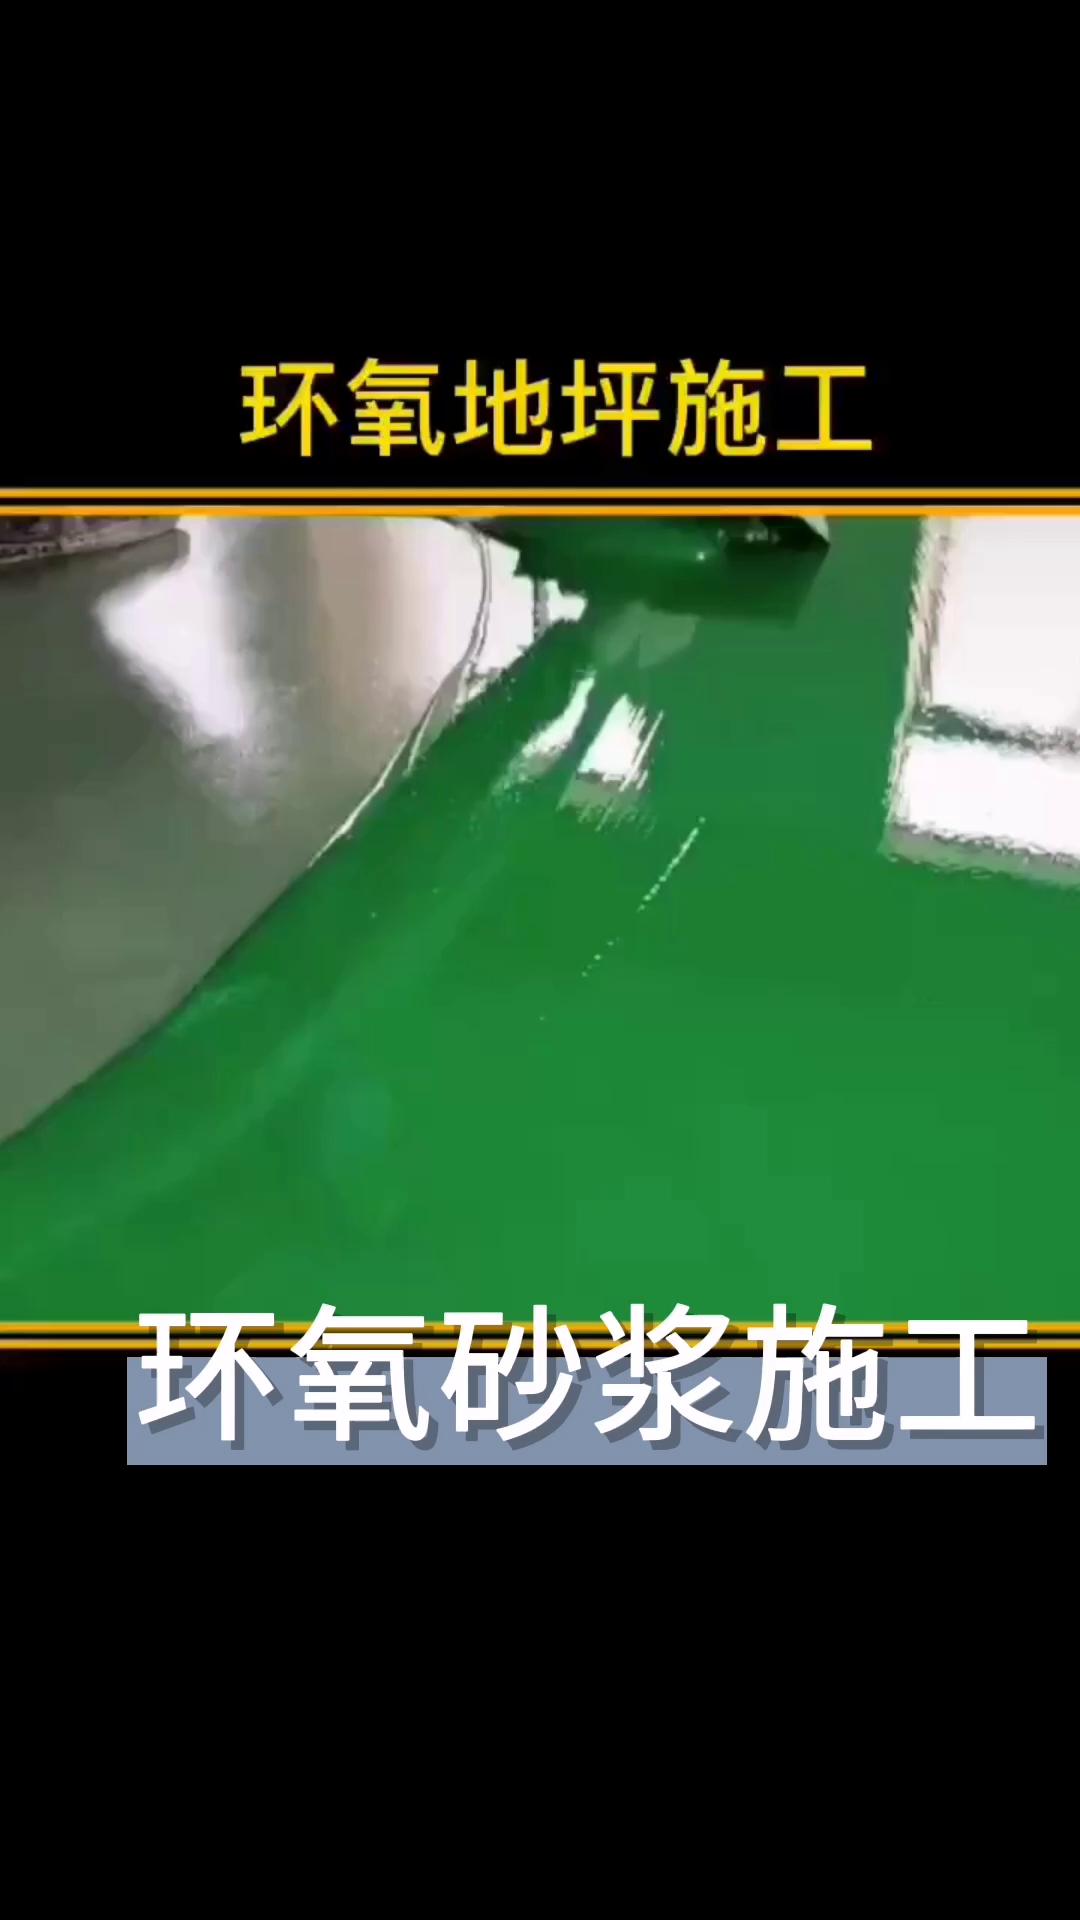 Recubrimiento industrial de pintura epoxi para pisos de alta resistencia